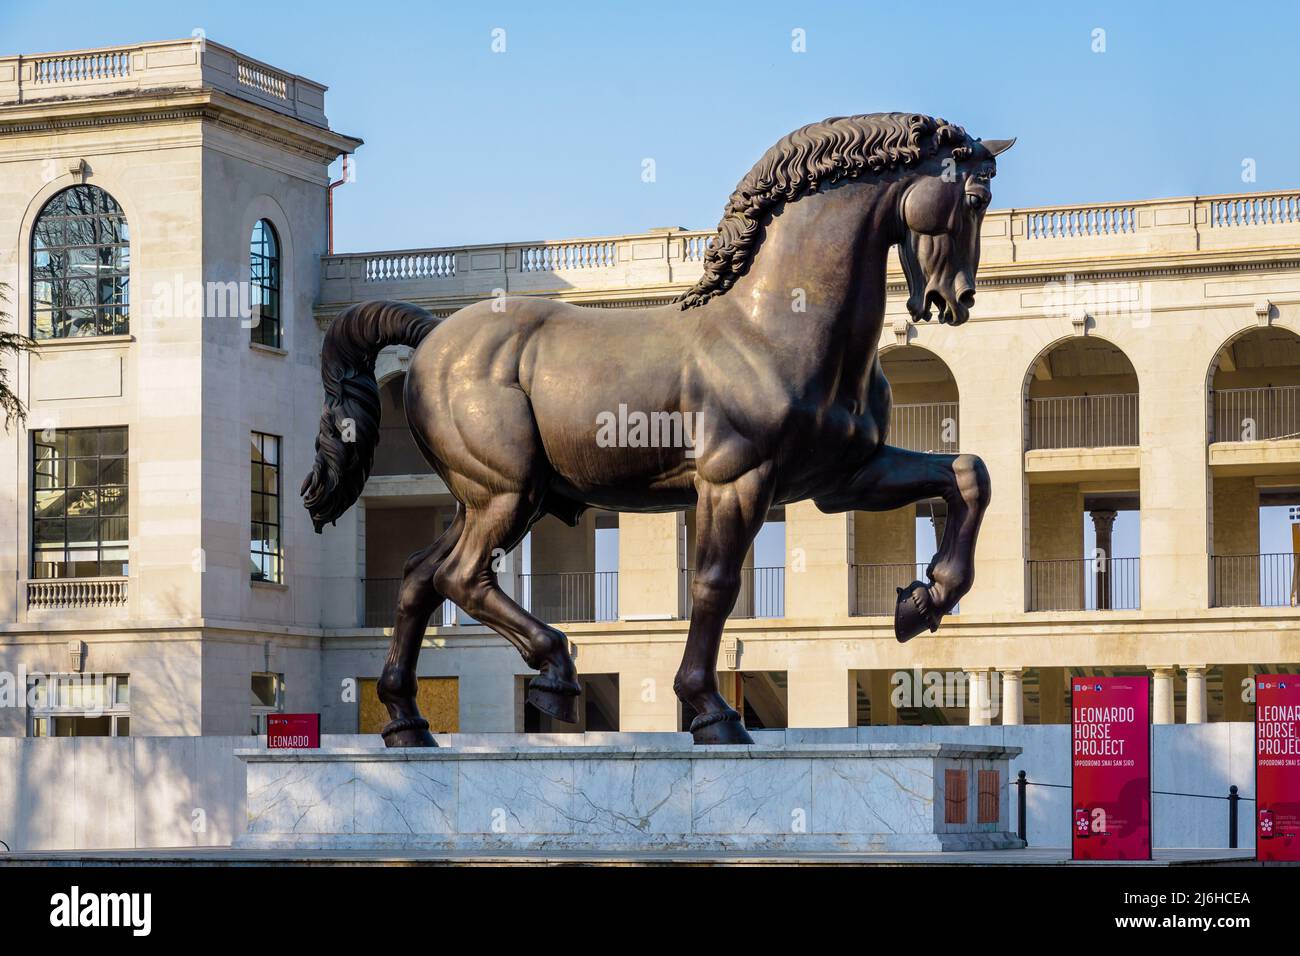 El caballo de Leonardo (Cavallo di Leonardo) es una moderna estatua de bronce después de la obra de Leonardo da Vinci, expuesta en Milán, Italia. Foto de stock